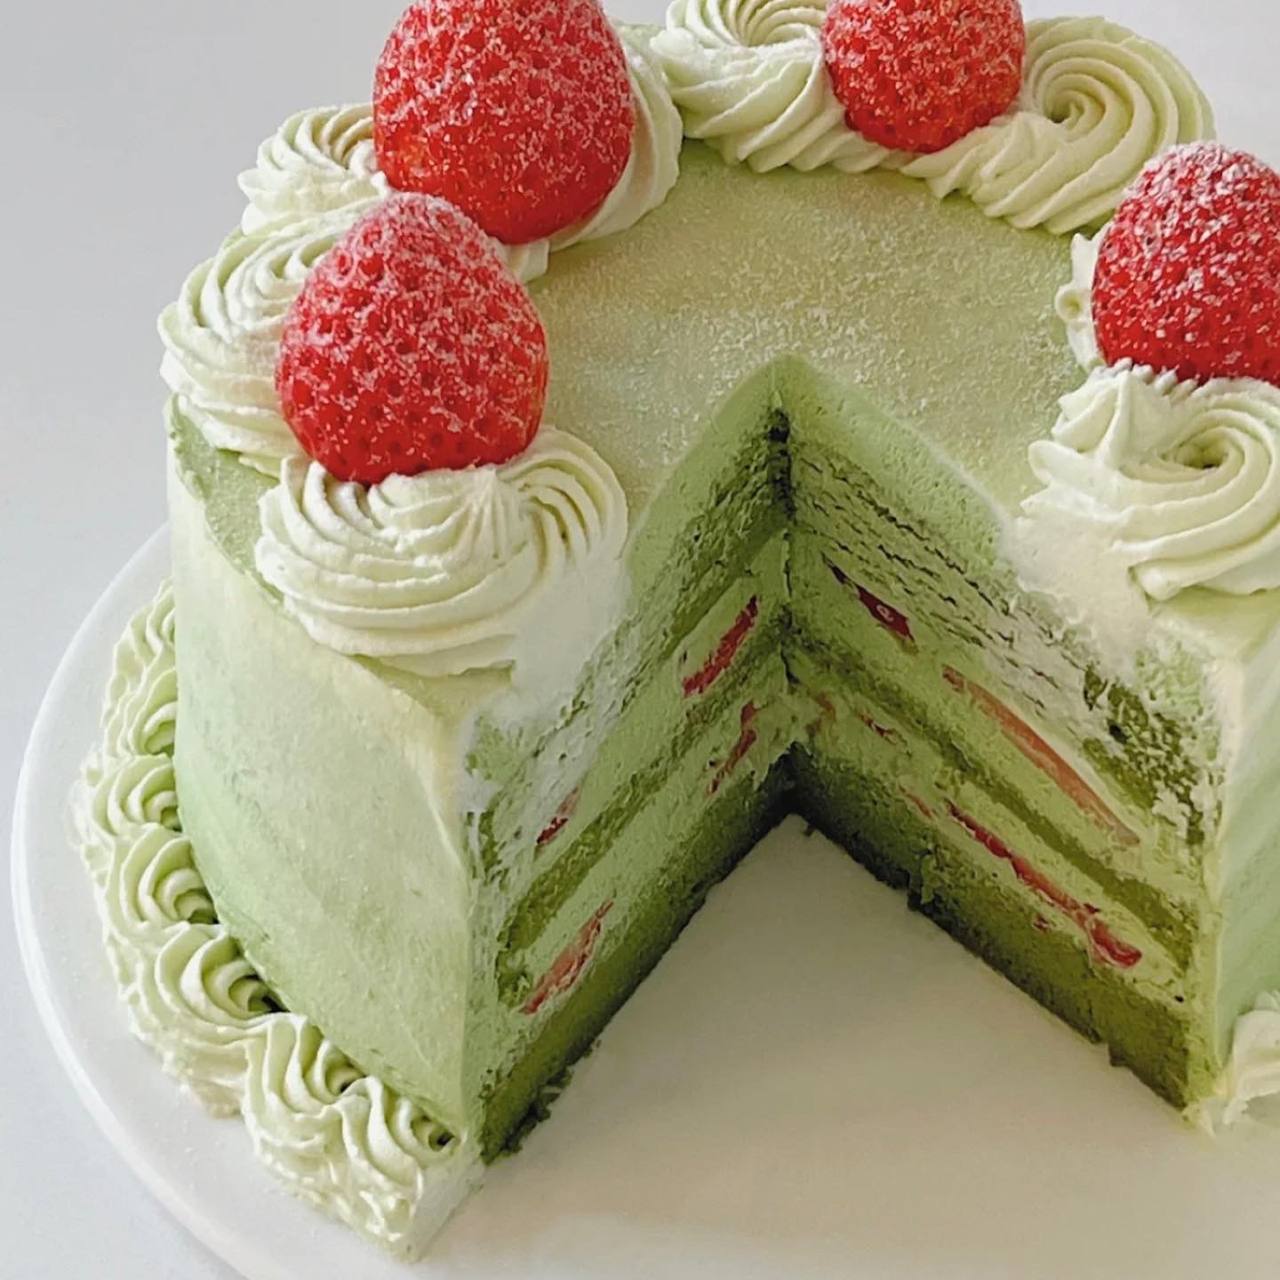 Matcha Strawberries Cake